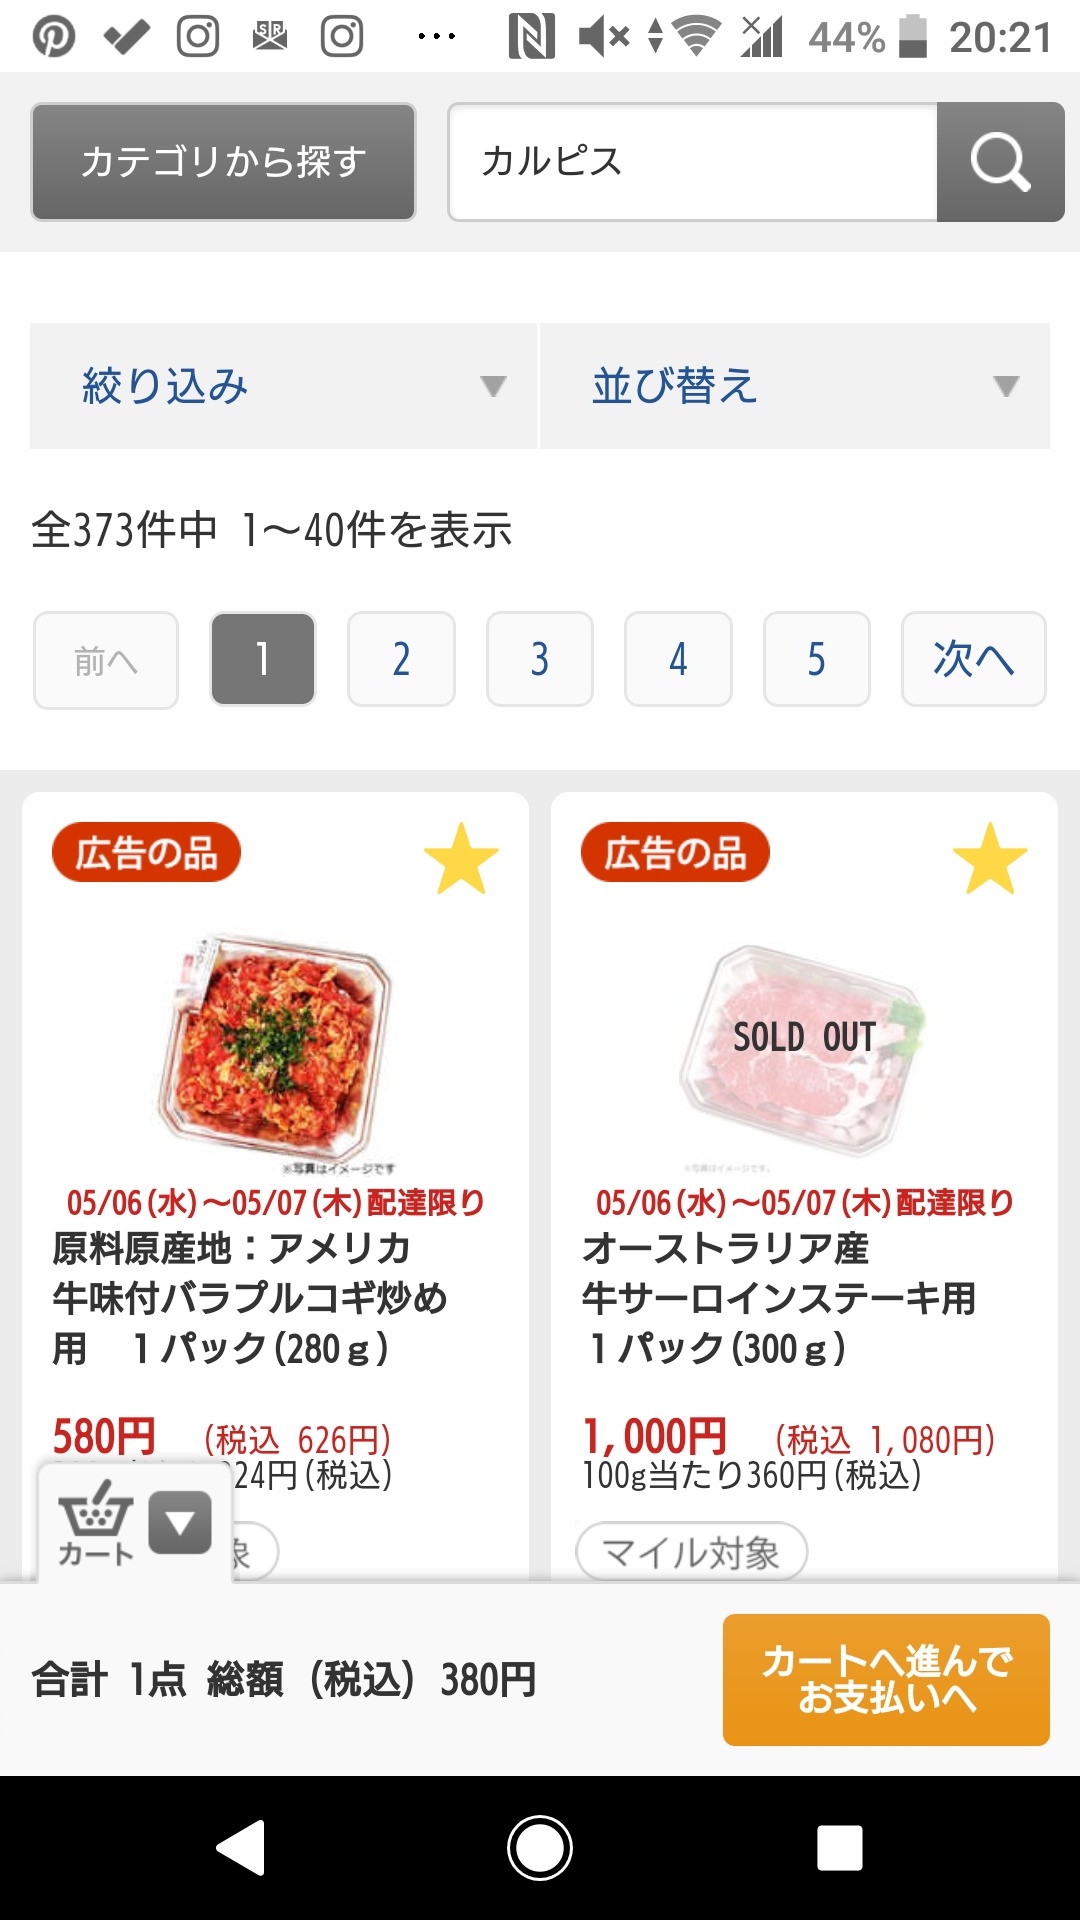 札幌や北海道で利用できるイトーヨーカドーネットスーパーの使い方手順の画像_7